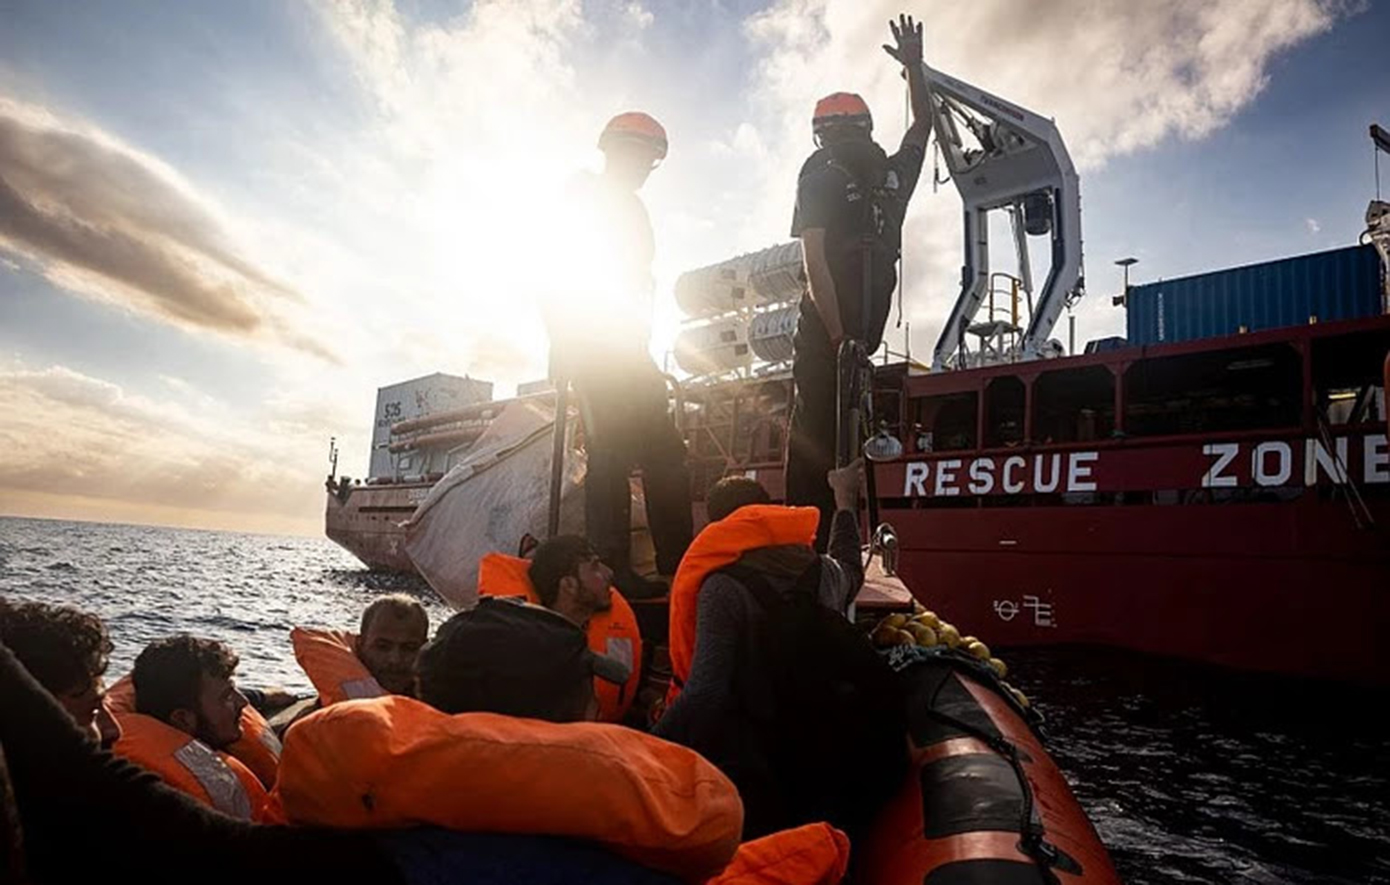 Ιταλία: 23 μετανάστες και πρόσφυγες αποβιβάστηκαν στην Κατάνη από το πλοίο Ocean Viking